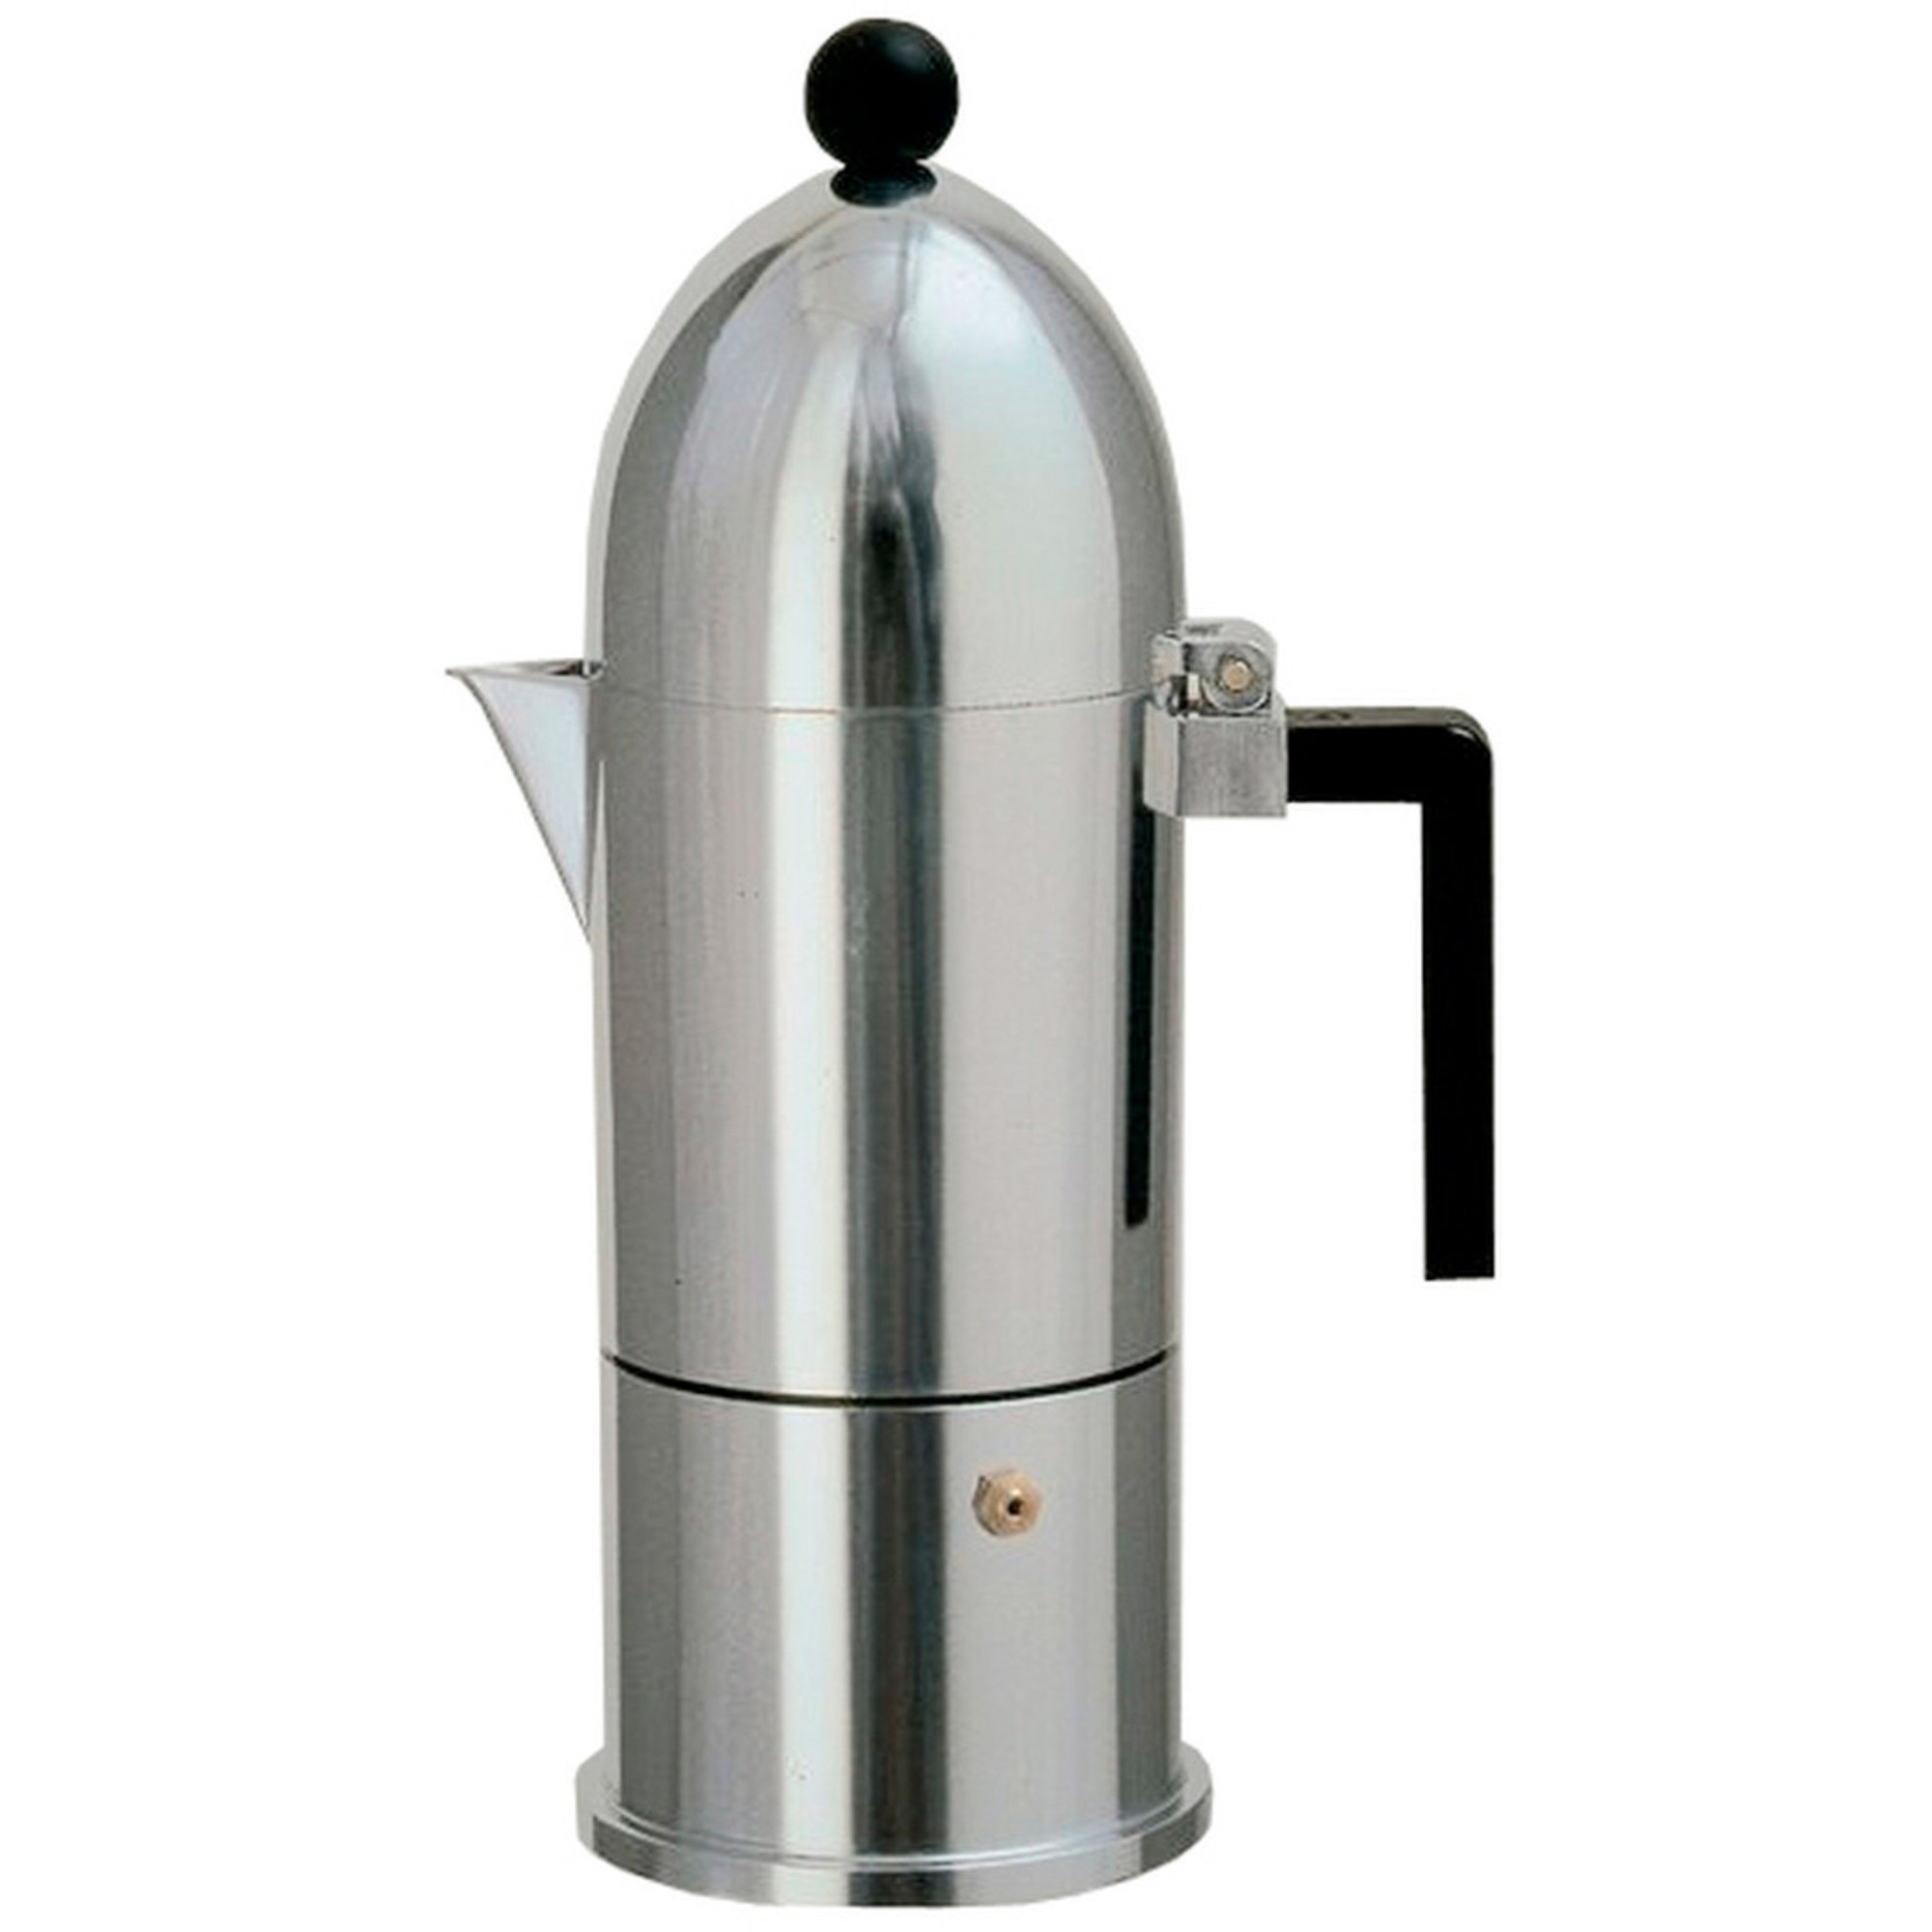 Alessi La Cupola Espressobrygger 3 Kopper